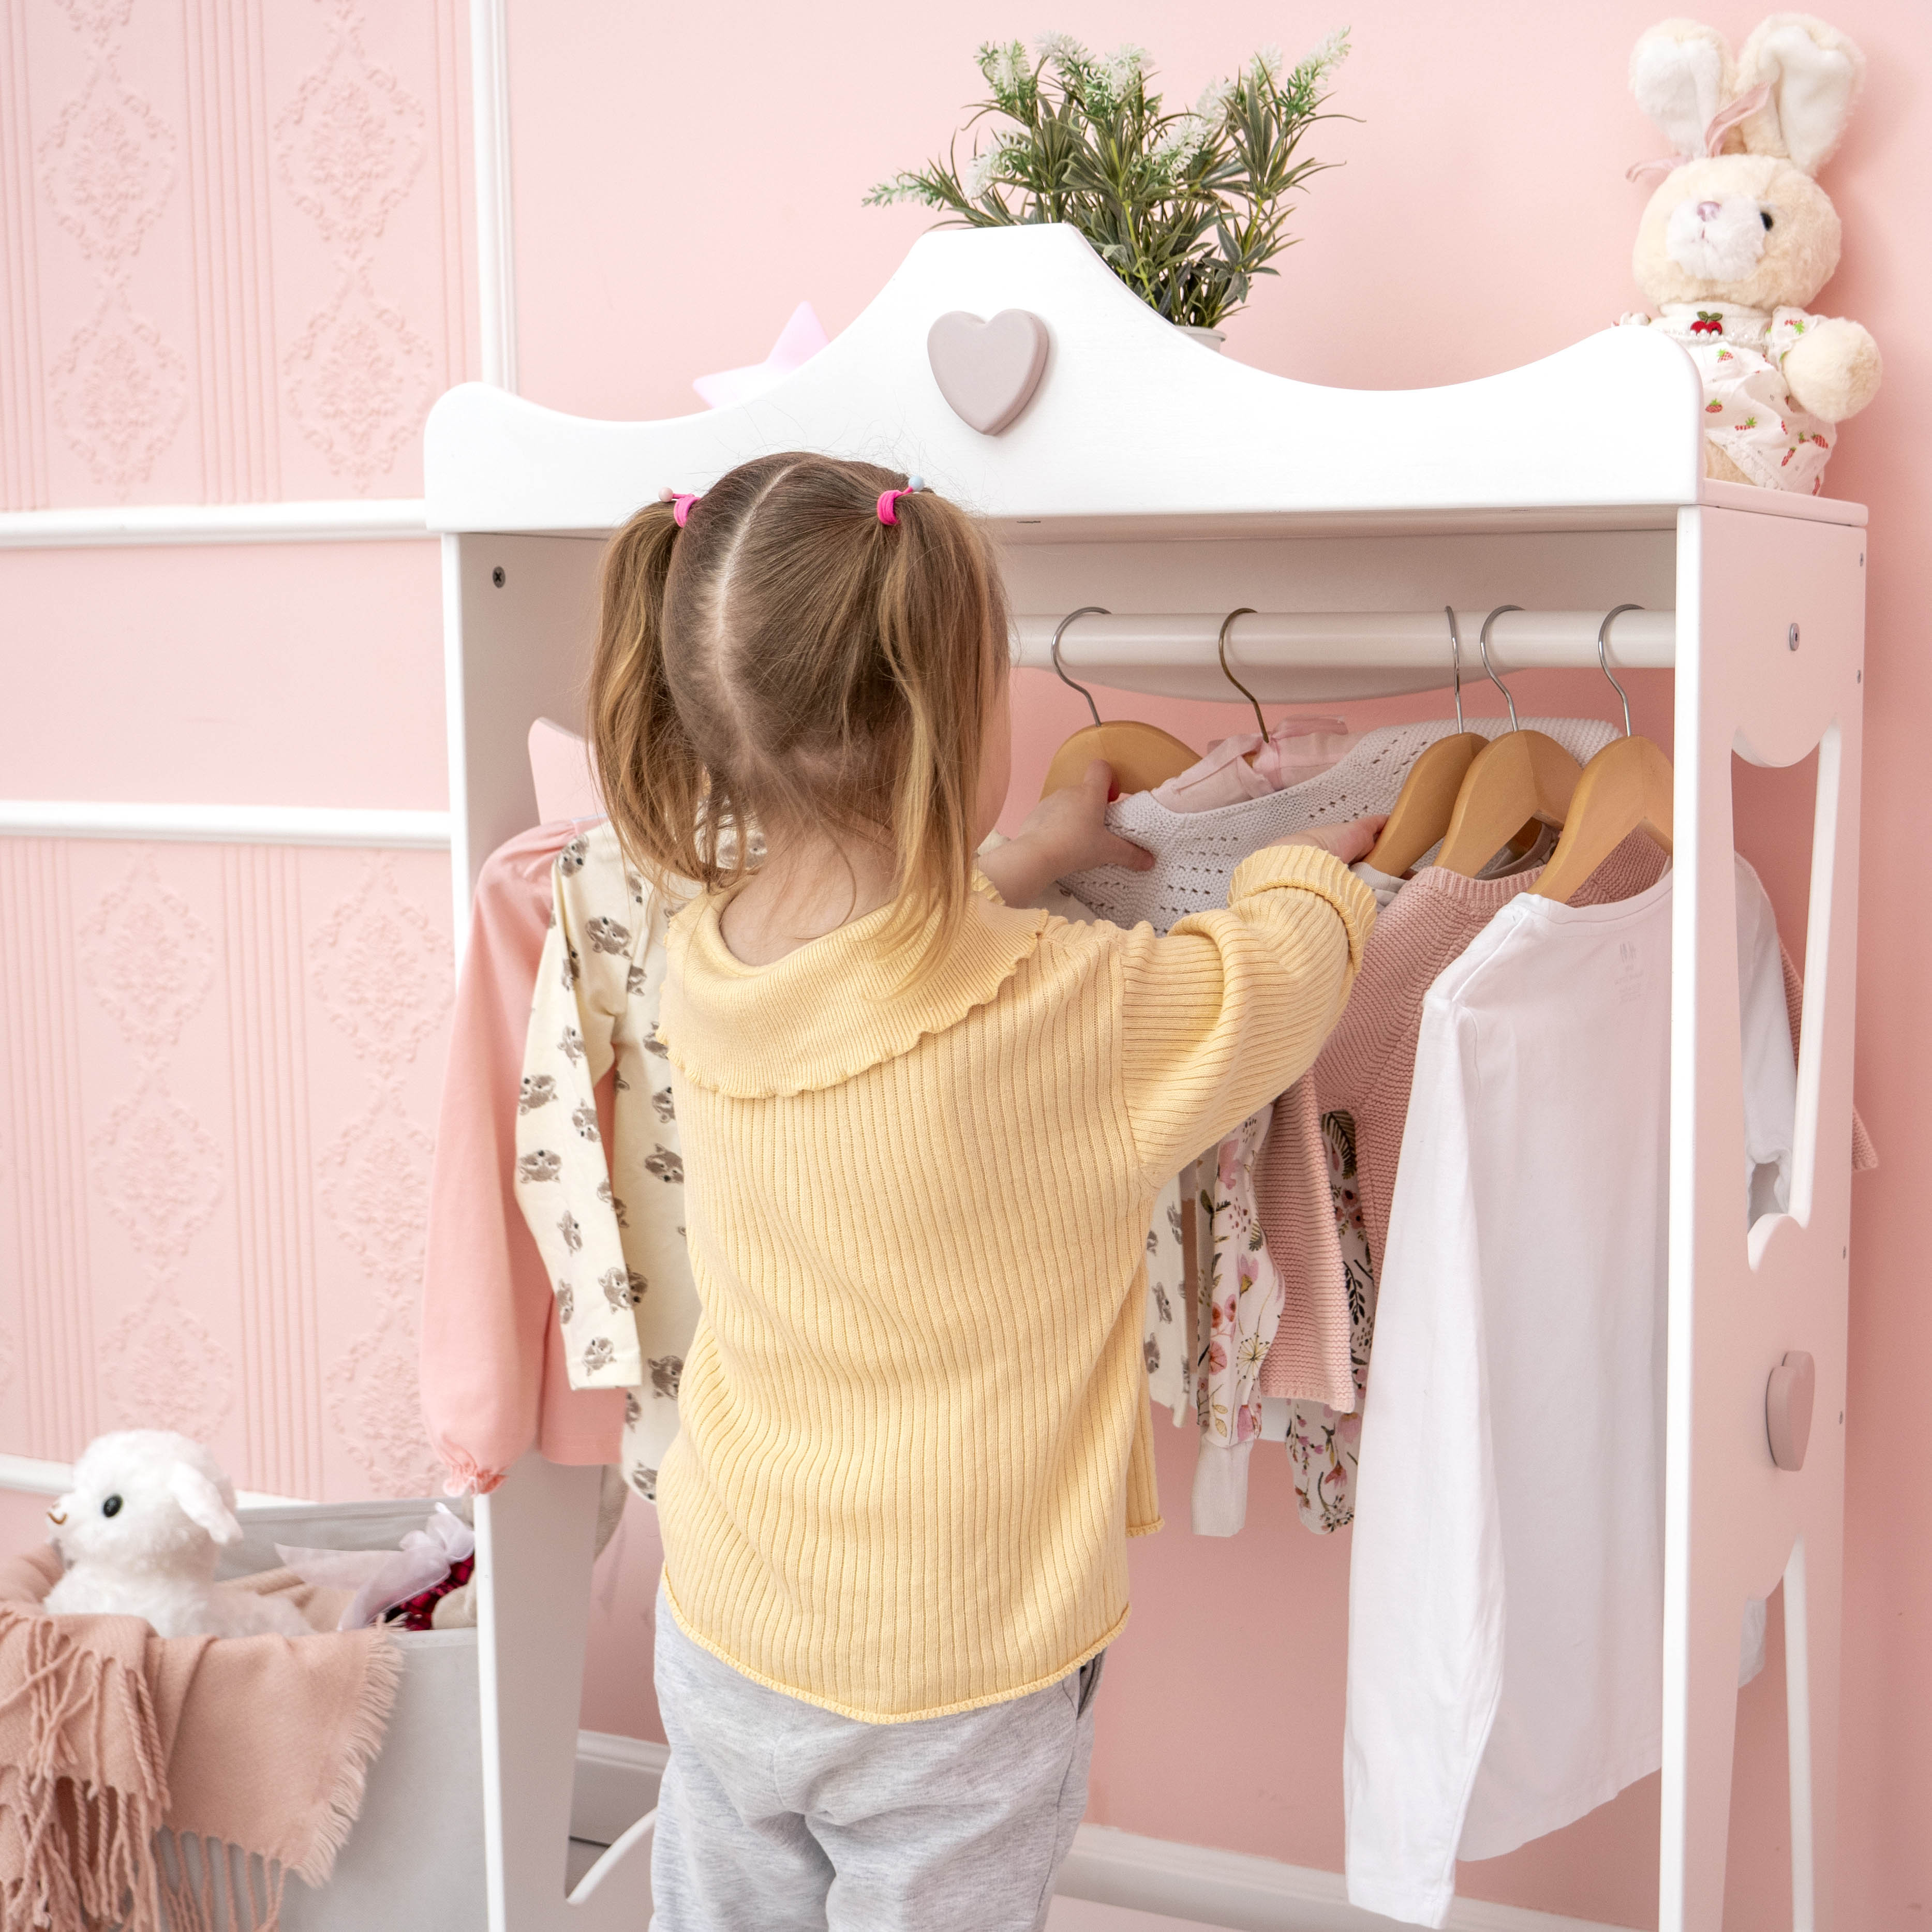 Cute little girl choosing festive dress hanged in pink cupboard